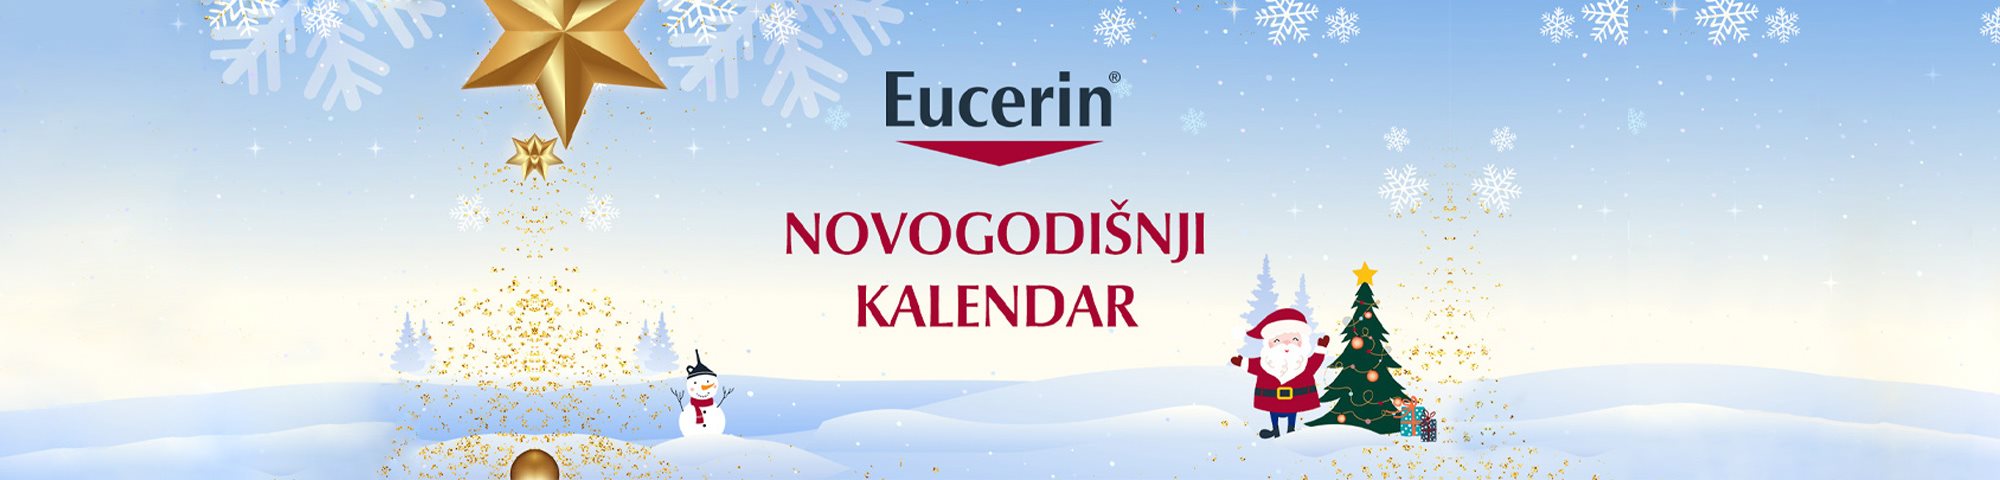 Eucerin Novogodišnji kalendar